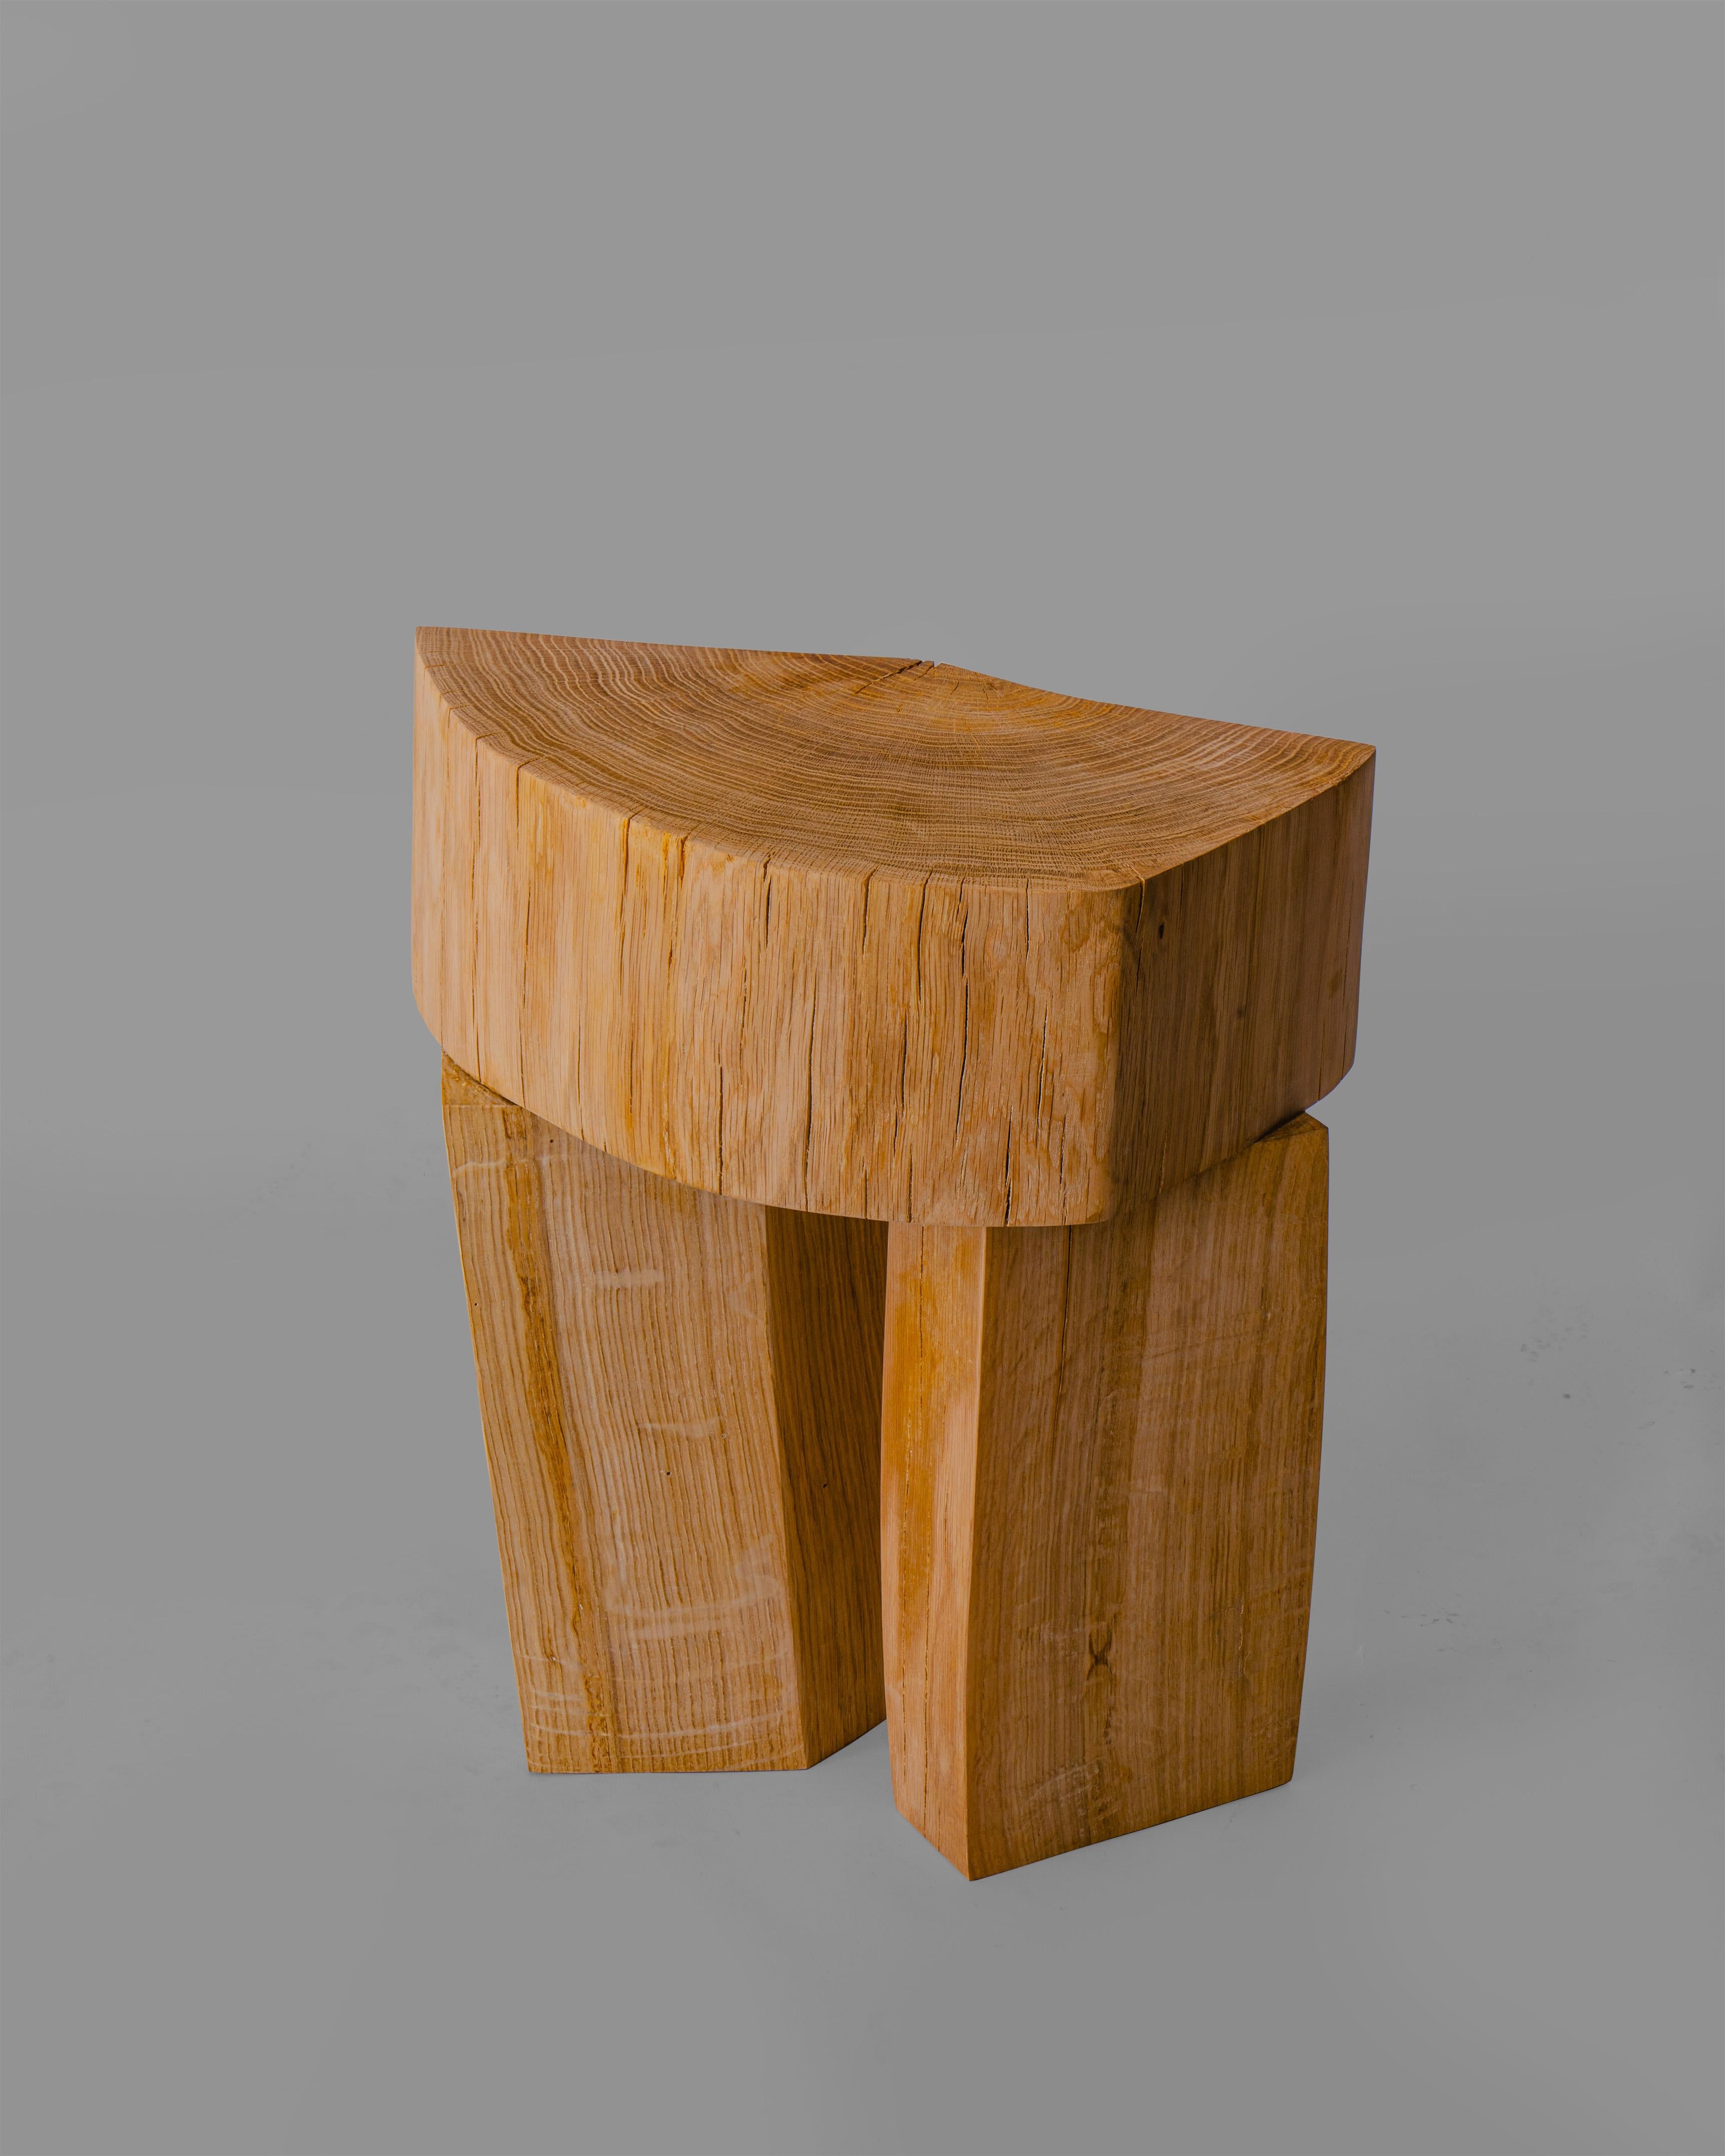 Hocker 3 ist Teil einer Hockerkollektion, die vom Studio Heim+Viladrich entworfen wurde. Die Kollektion wurde aus Holzfragmenten von Eichen hergestellt, die beim Bau einer Straße in Aubrac in der Region Okzitanien, Frankreich, gefällt wurden. Jeder